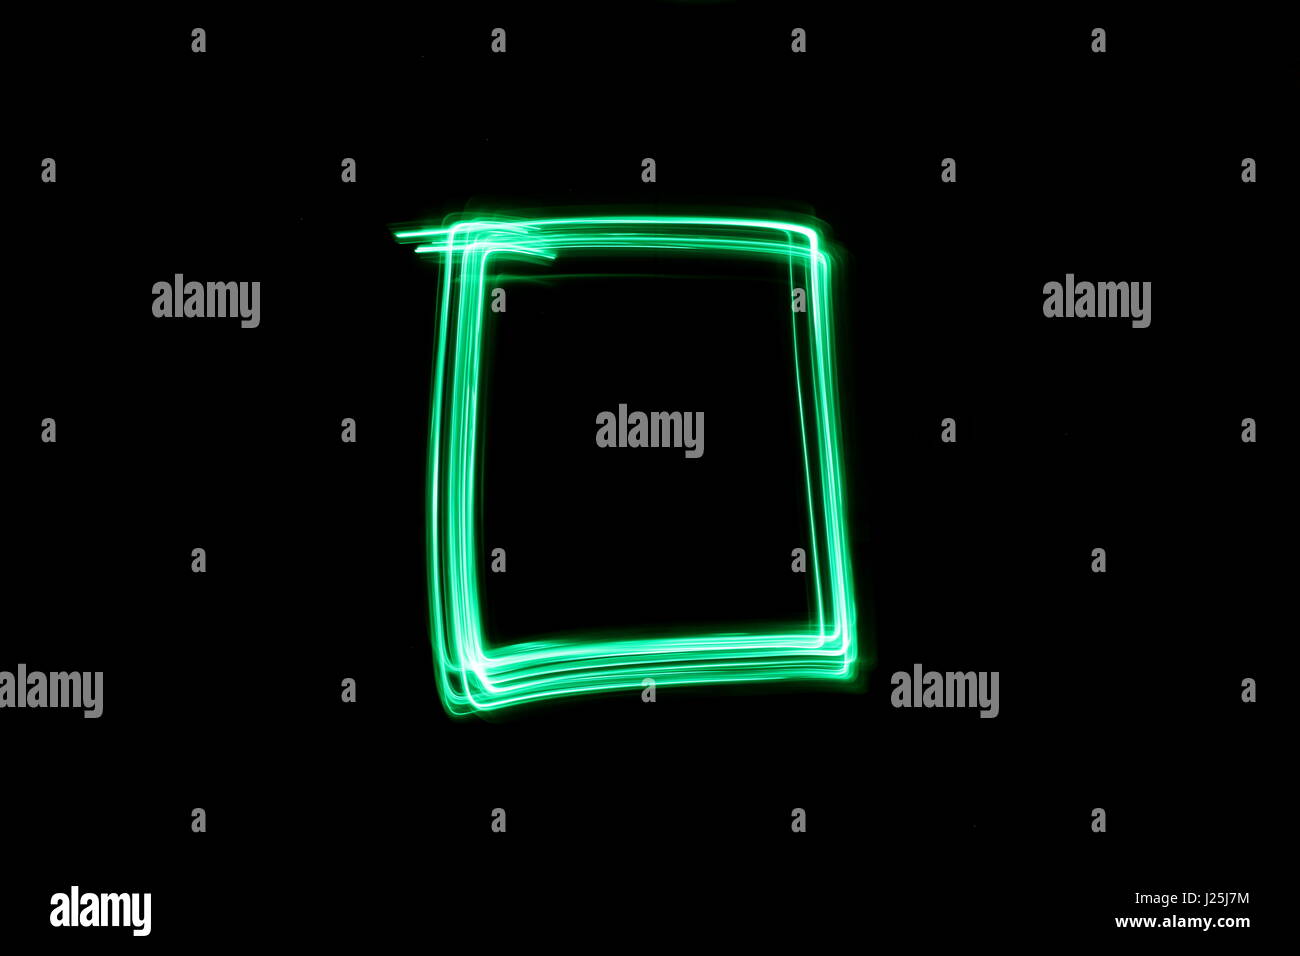 Una lunga esposizione fotografia di neon di colore verde in un astratto casella profilo di forma contro uno sfondo nero. Luce fotografia pittura, di colore in astratto Foto Stock